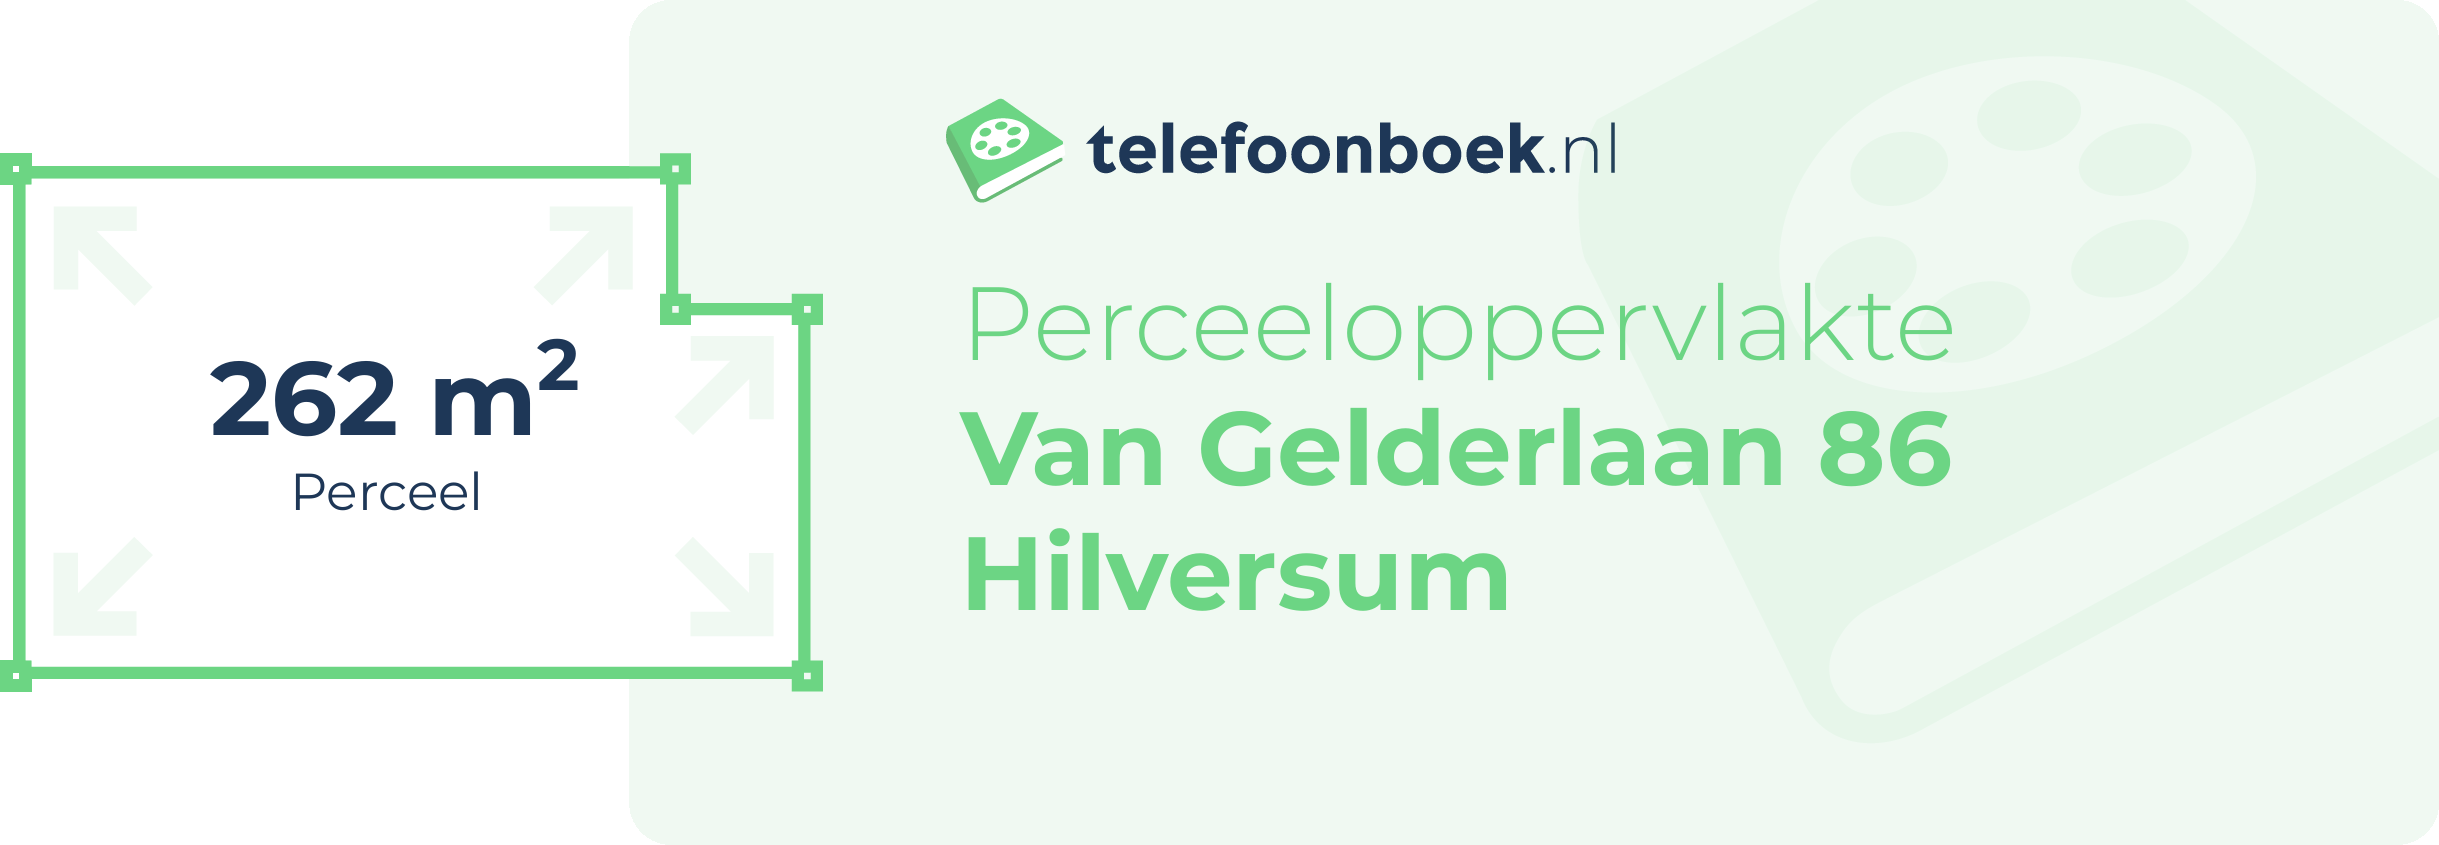 Perceeloppervlakte Van Gelderlaan 86 Hilversum